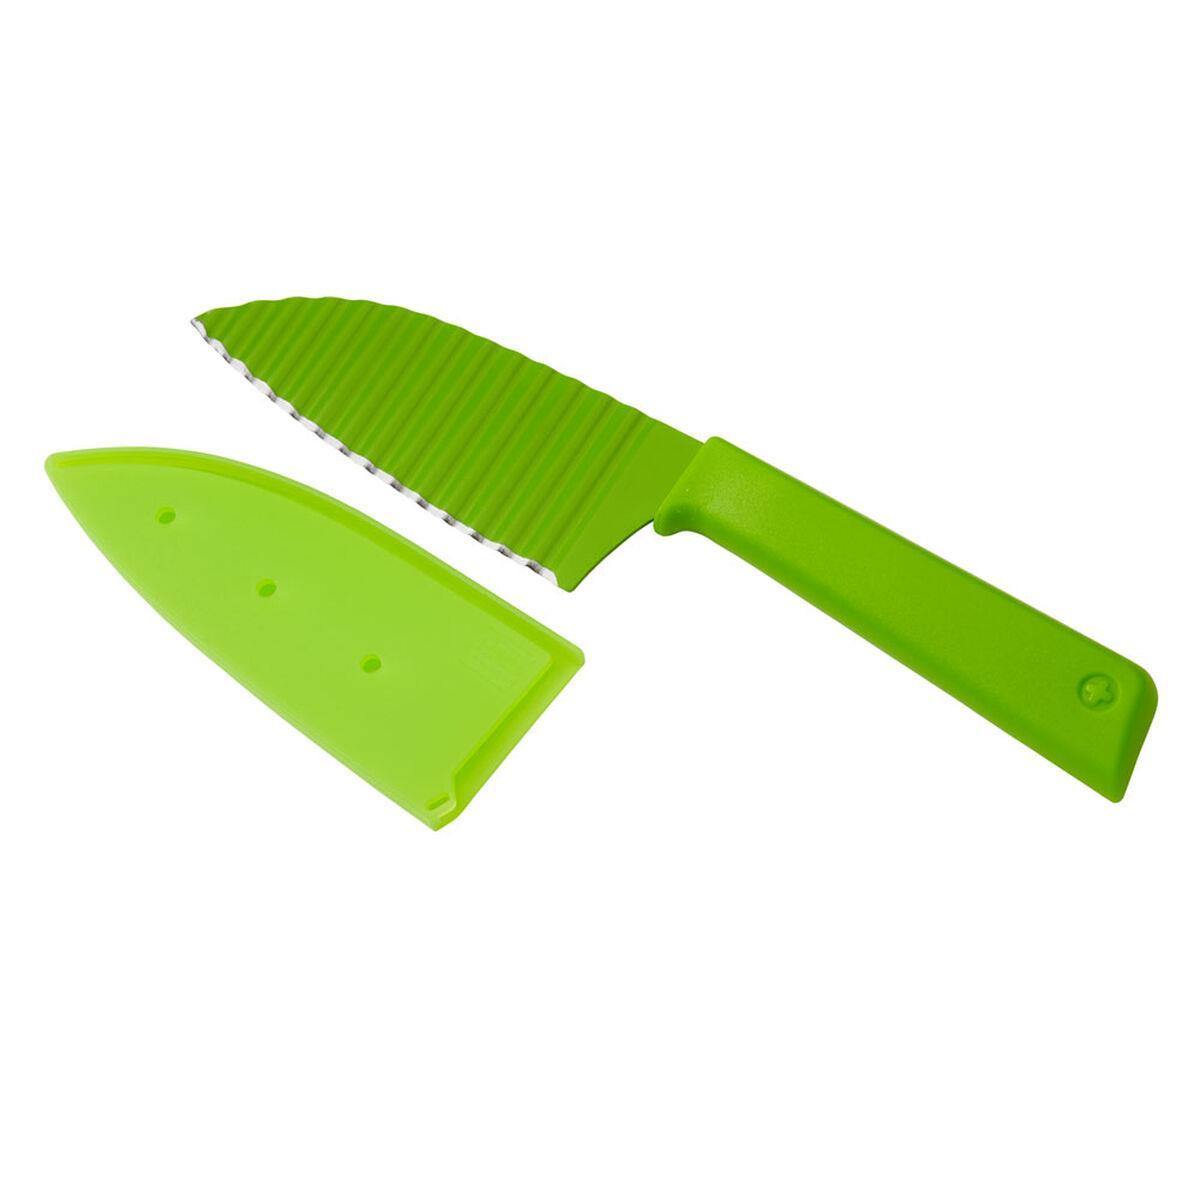 Kuhn Rikon Krinkle Knife Green - Kitchenalia Westboro